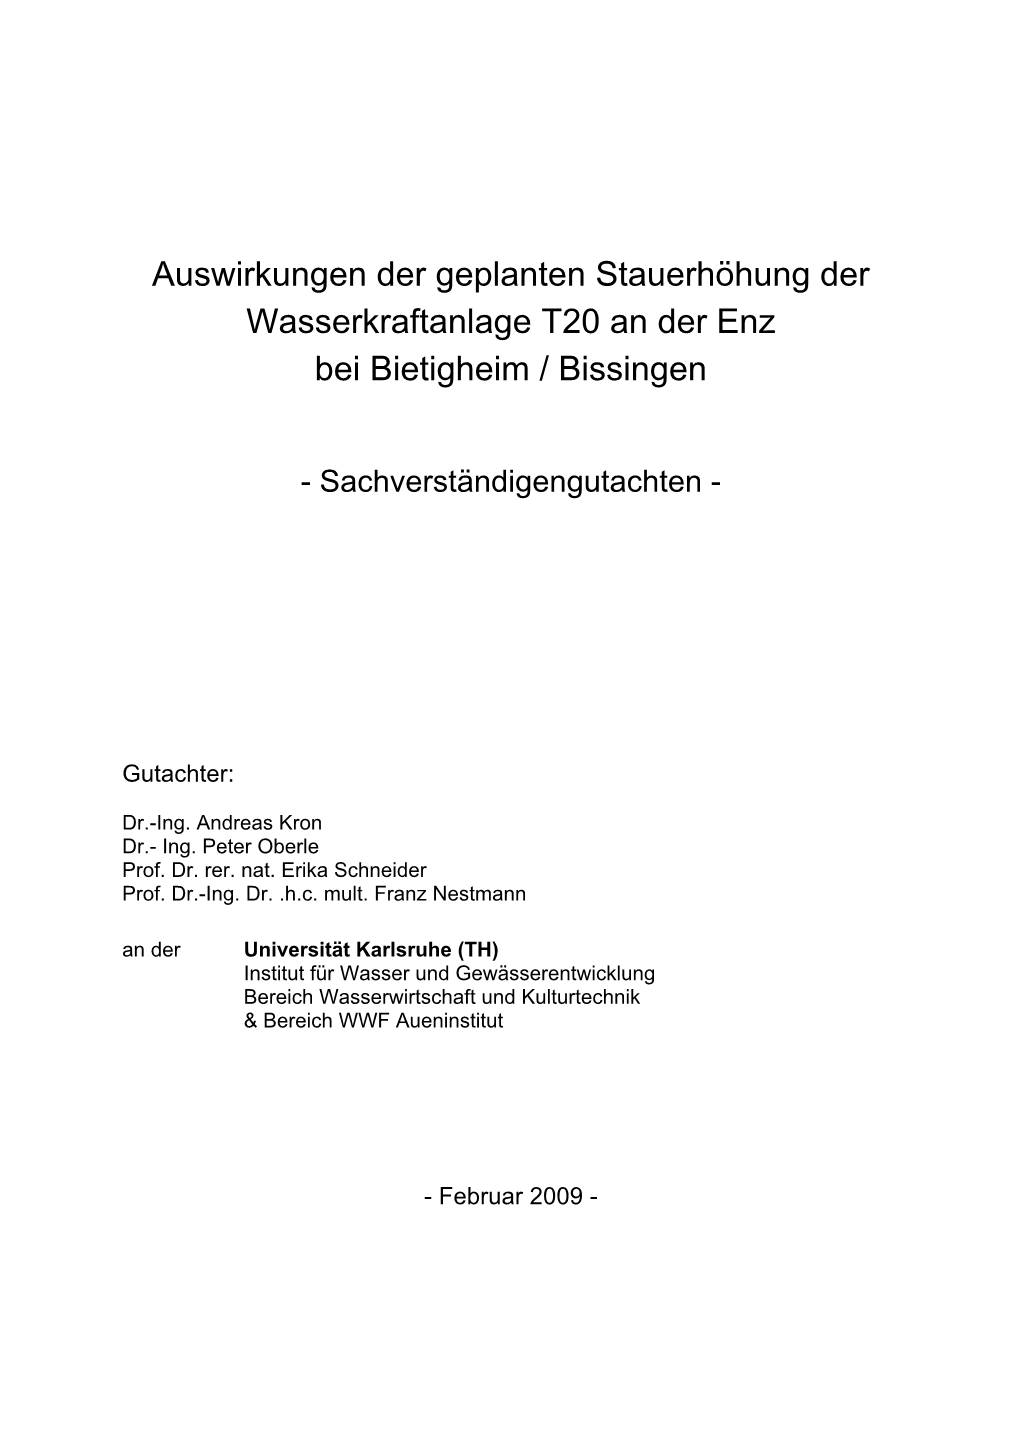 Auswirkungen Der Geplanten Stauerhöhung Der Wasserkraftanlage T20 an Der Enz Bei Bietigheim / Bissingen